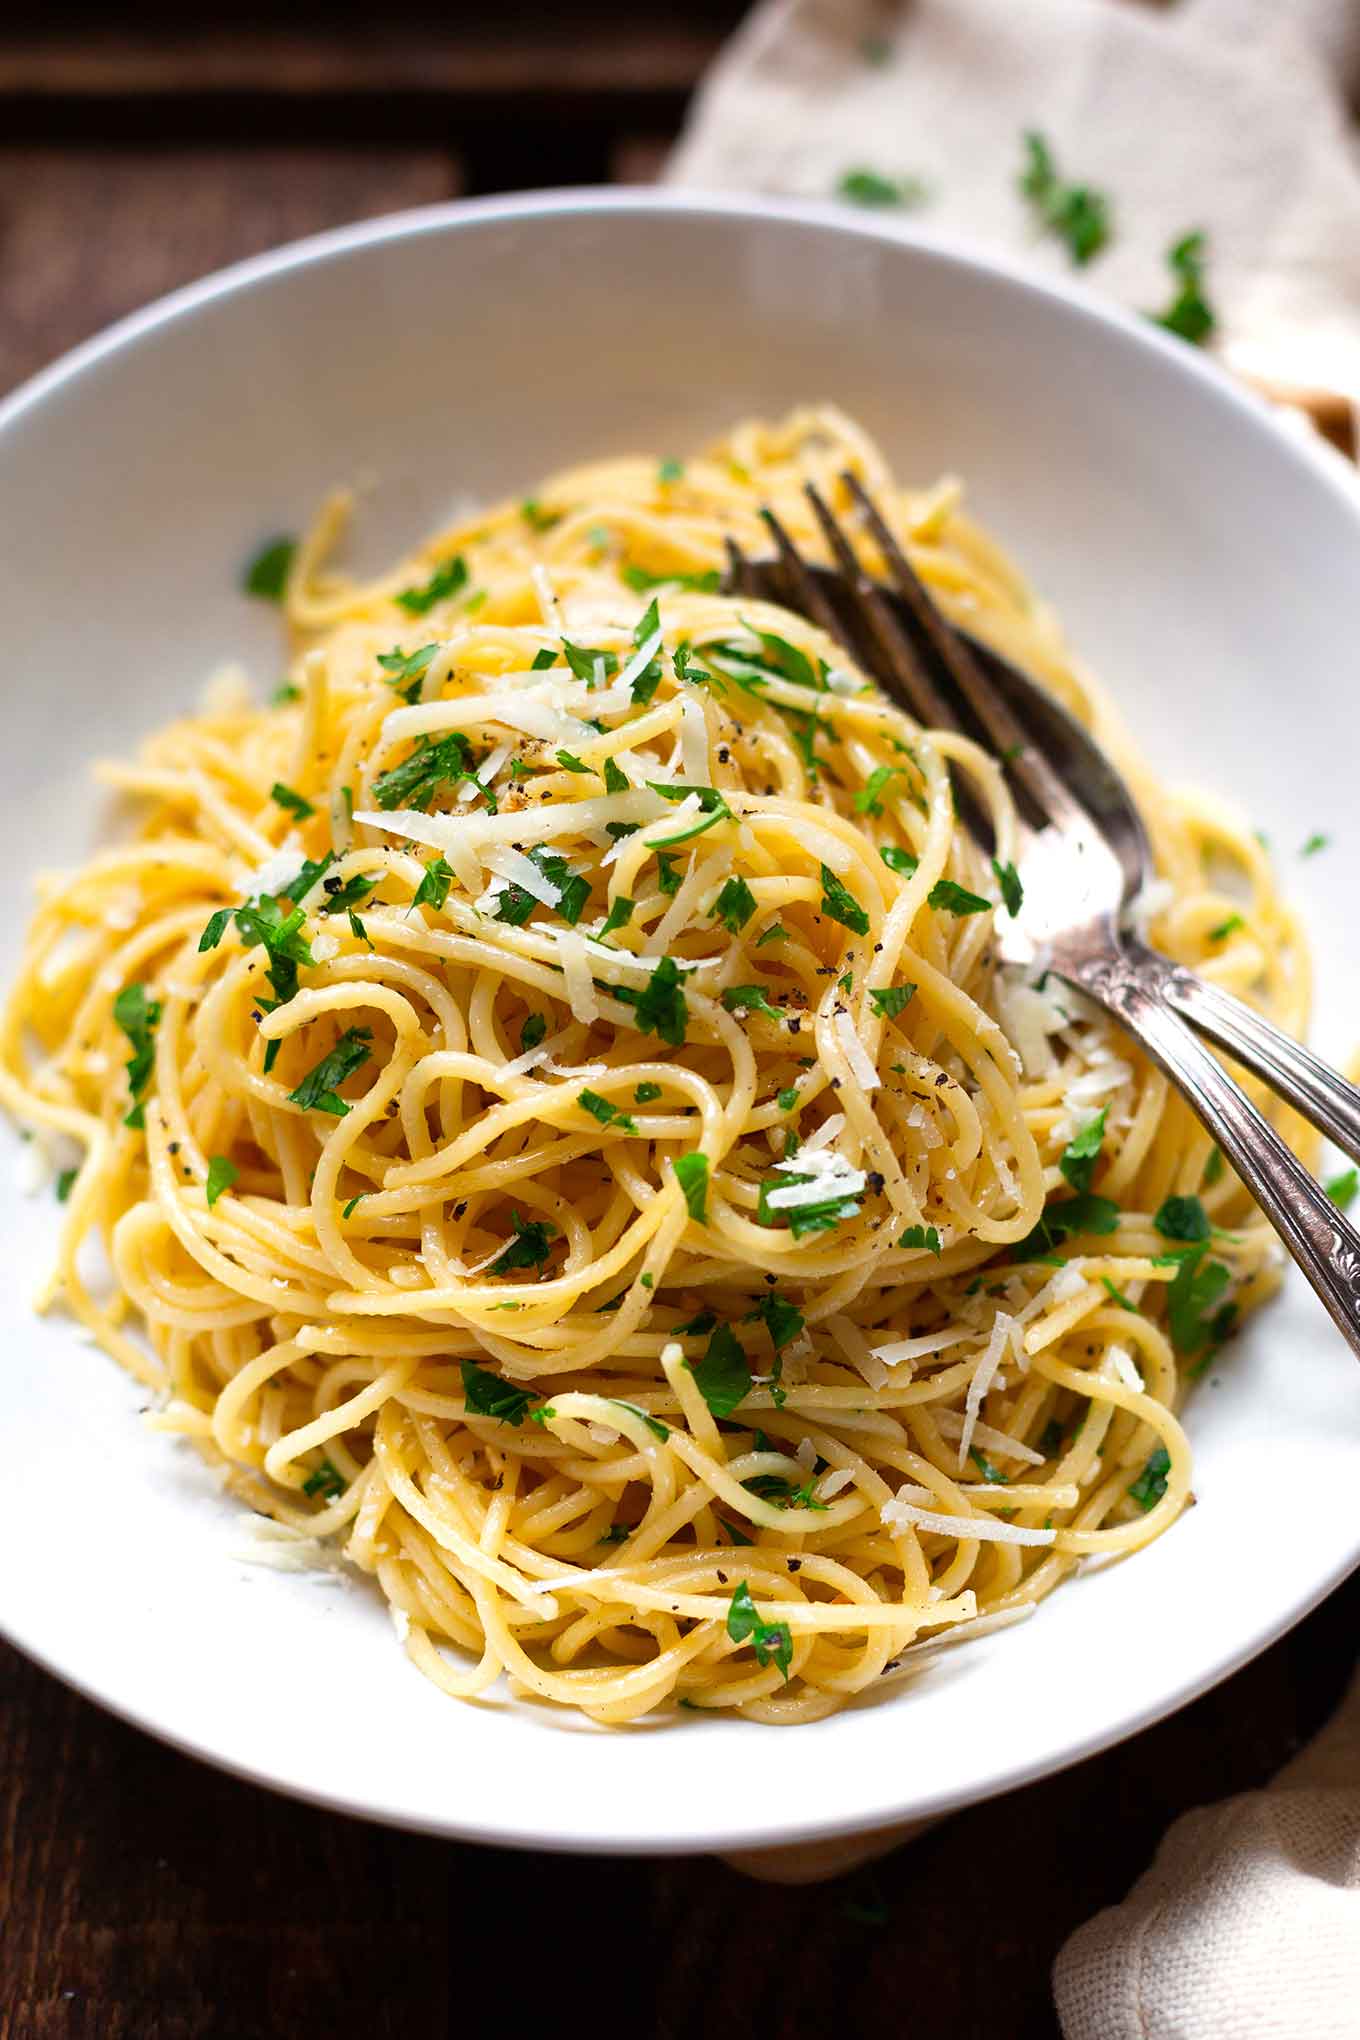 Frisch, köstlich und in 15 Minuten auf dem Tisch: Die Pasta mit Knoblauch, Zitrone und Parmesan ist perfekt als schnelles Abendessen unter der Woche! - Kochkarussell Foodblog #pasta #spaghetti #knoblauch